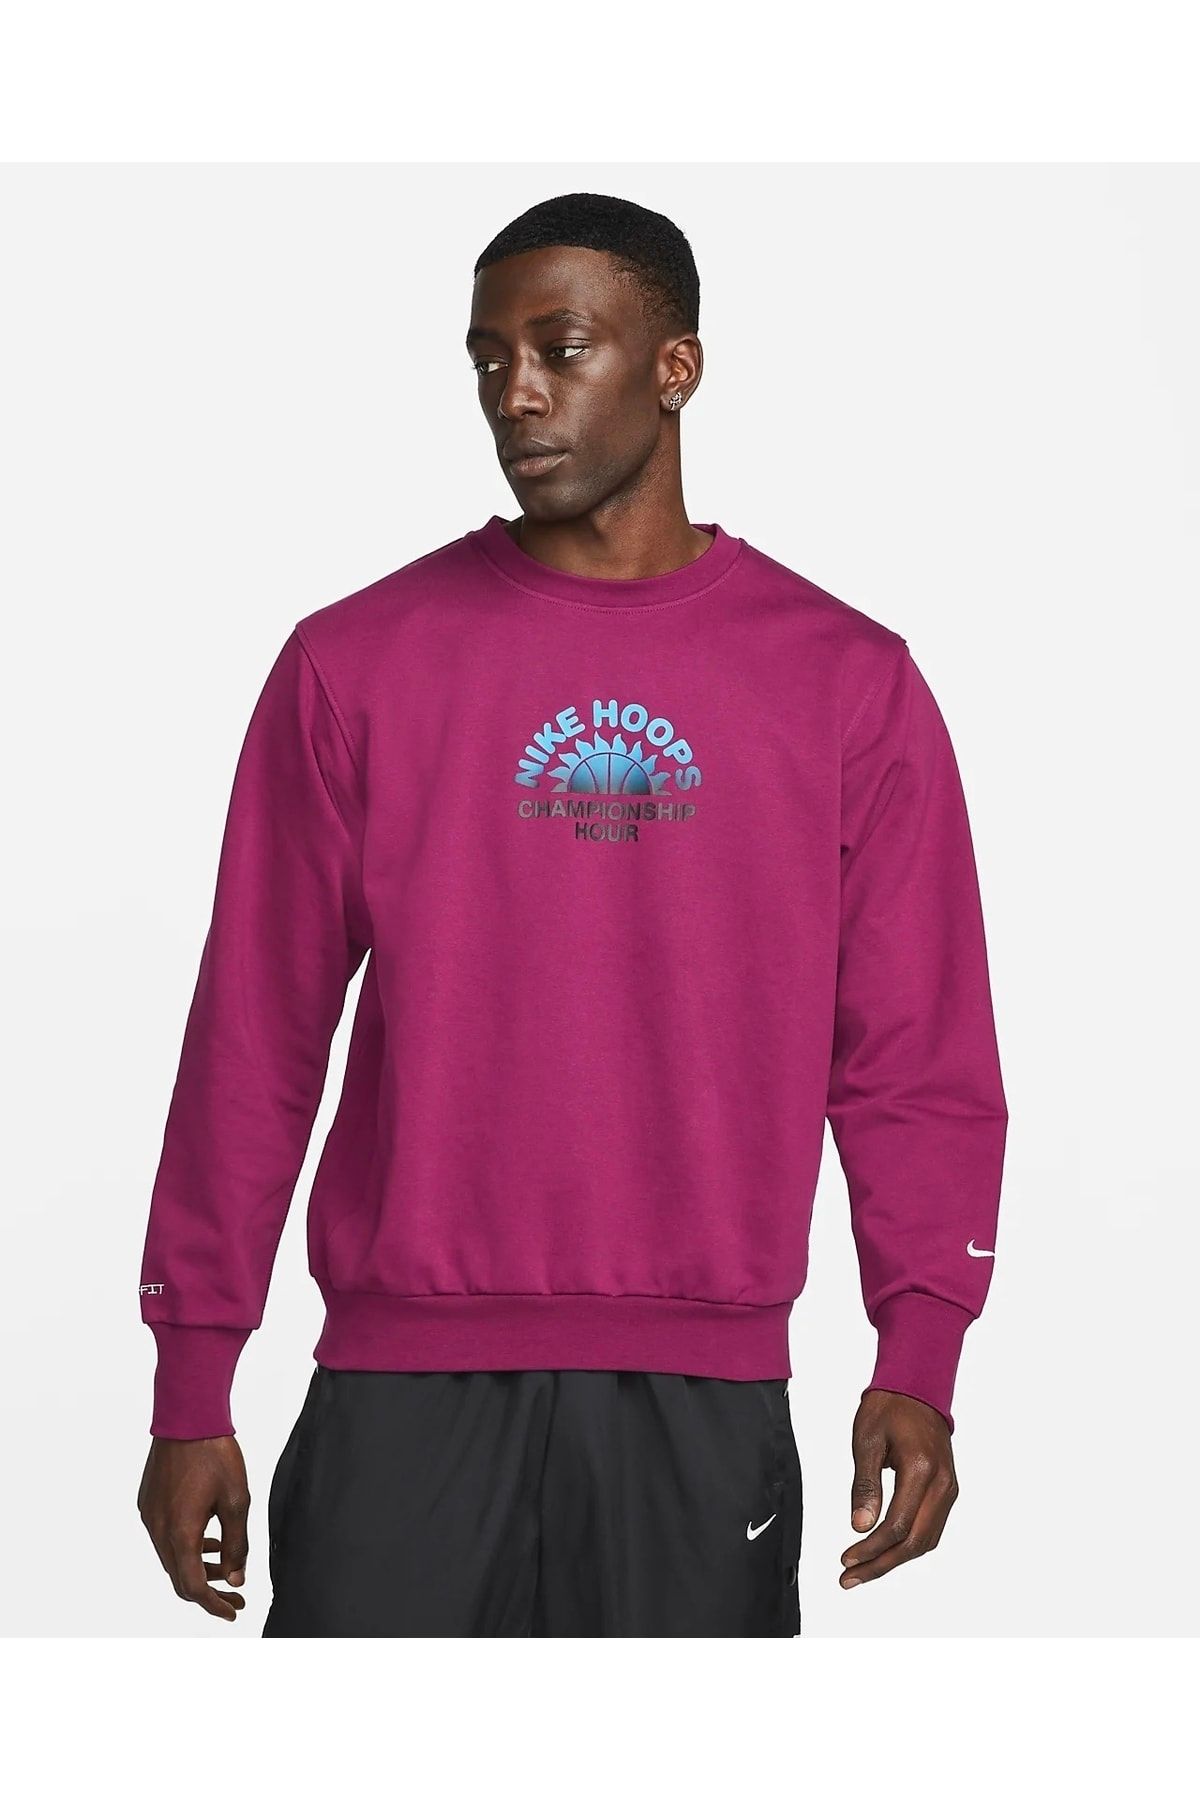 Nike Standard Issue Erkek Basketbol Crew Sweatshirt